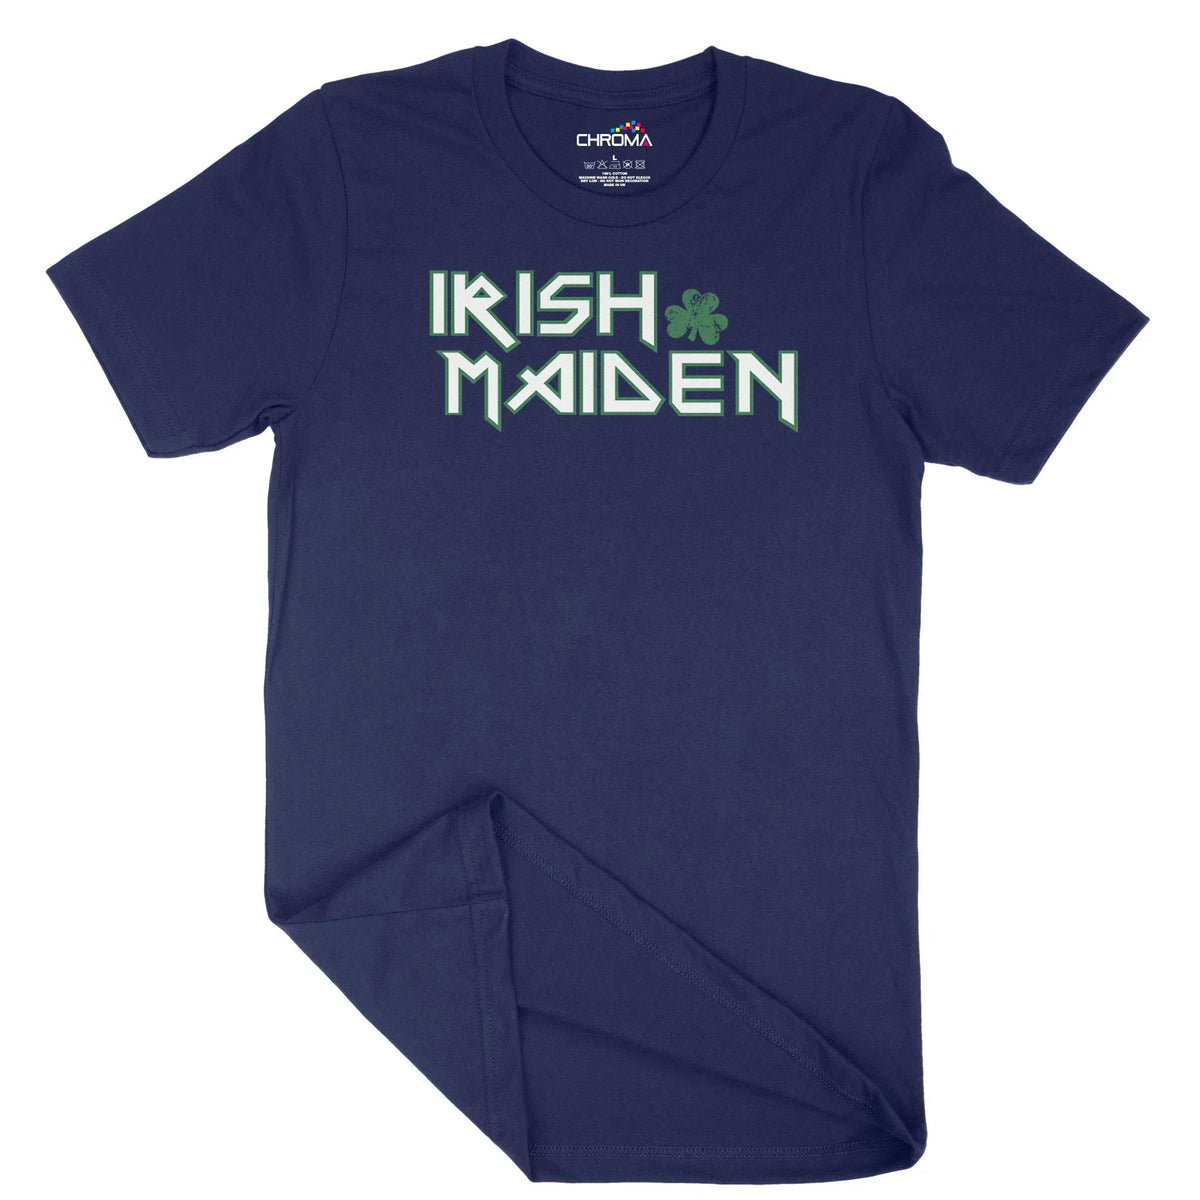 Irish Iron Maiden Unisex Adult T-Shirt | Quality Slogan Clothing Chroma Clothing